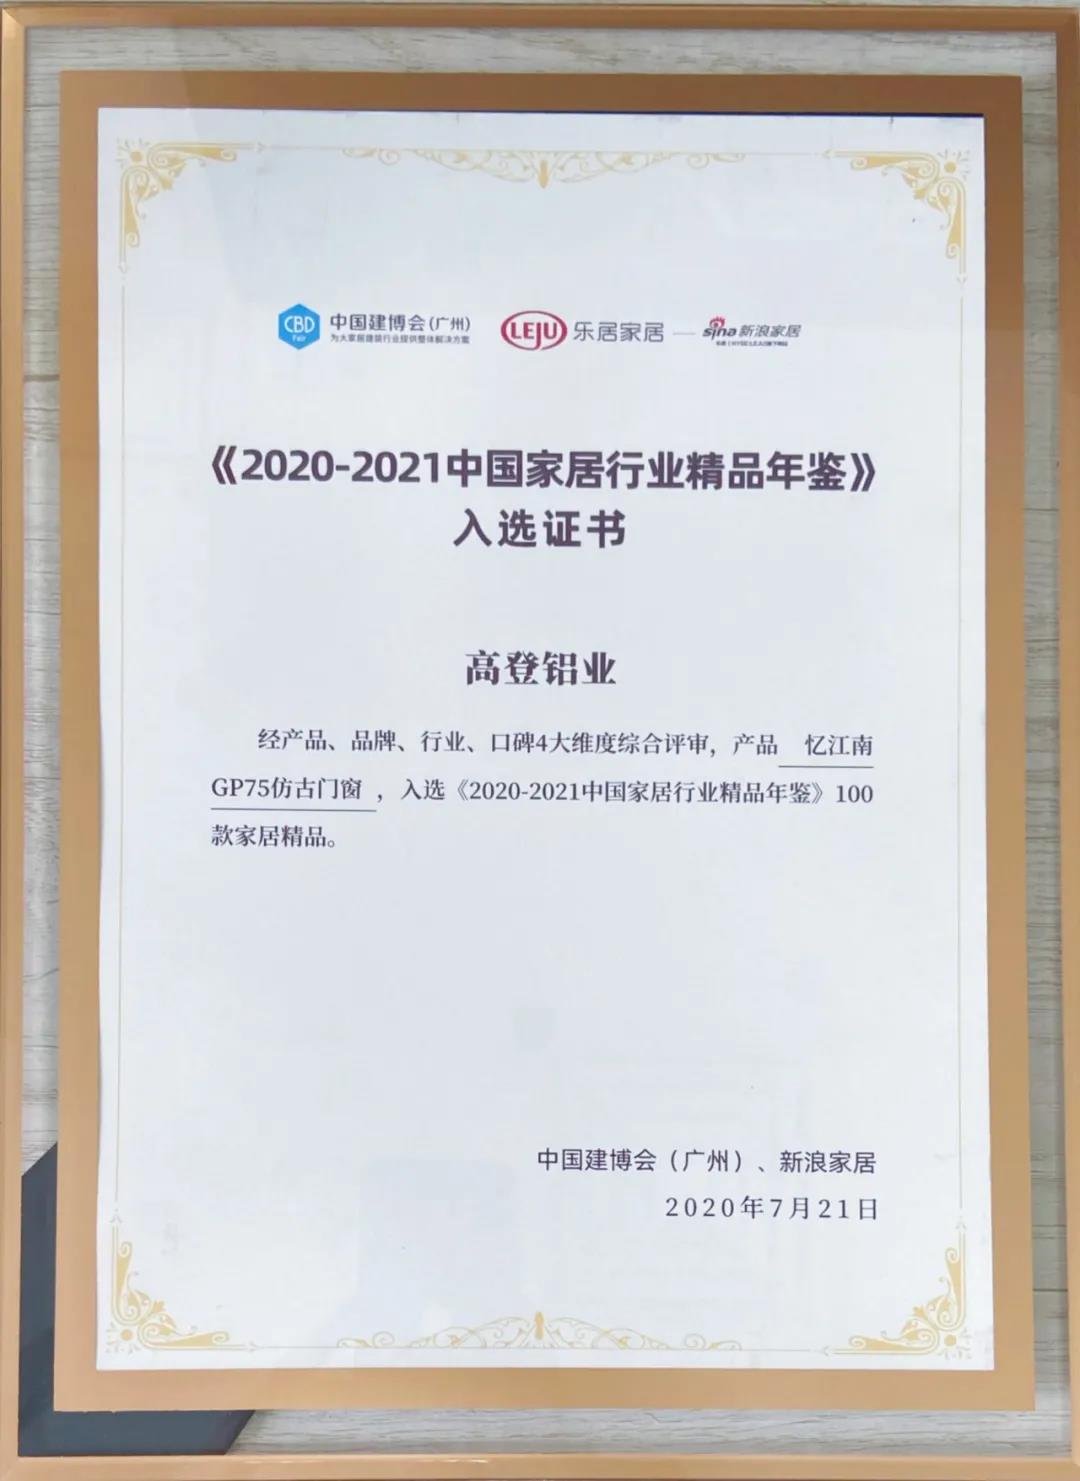 2021全网最大下注平台（中国）集团有限公司入选《2020-2021中国家居行业精品年鉴》